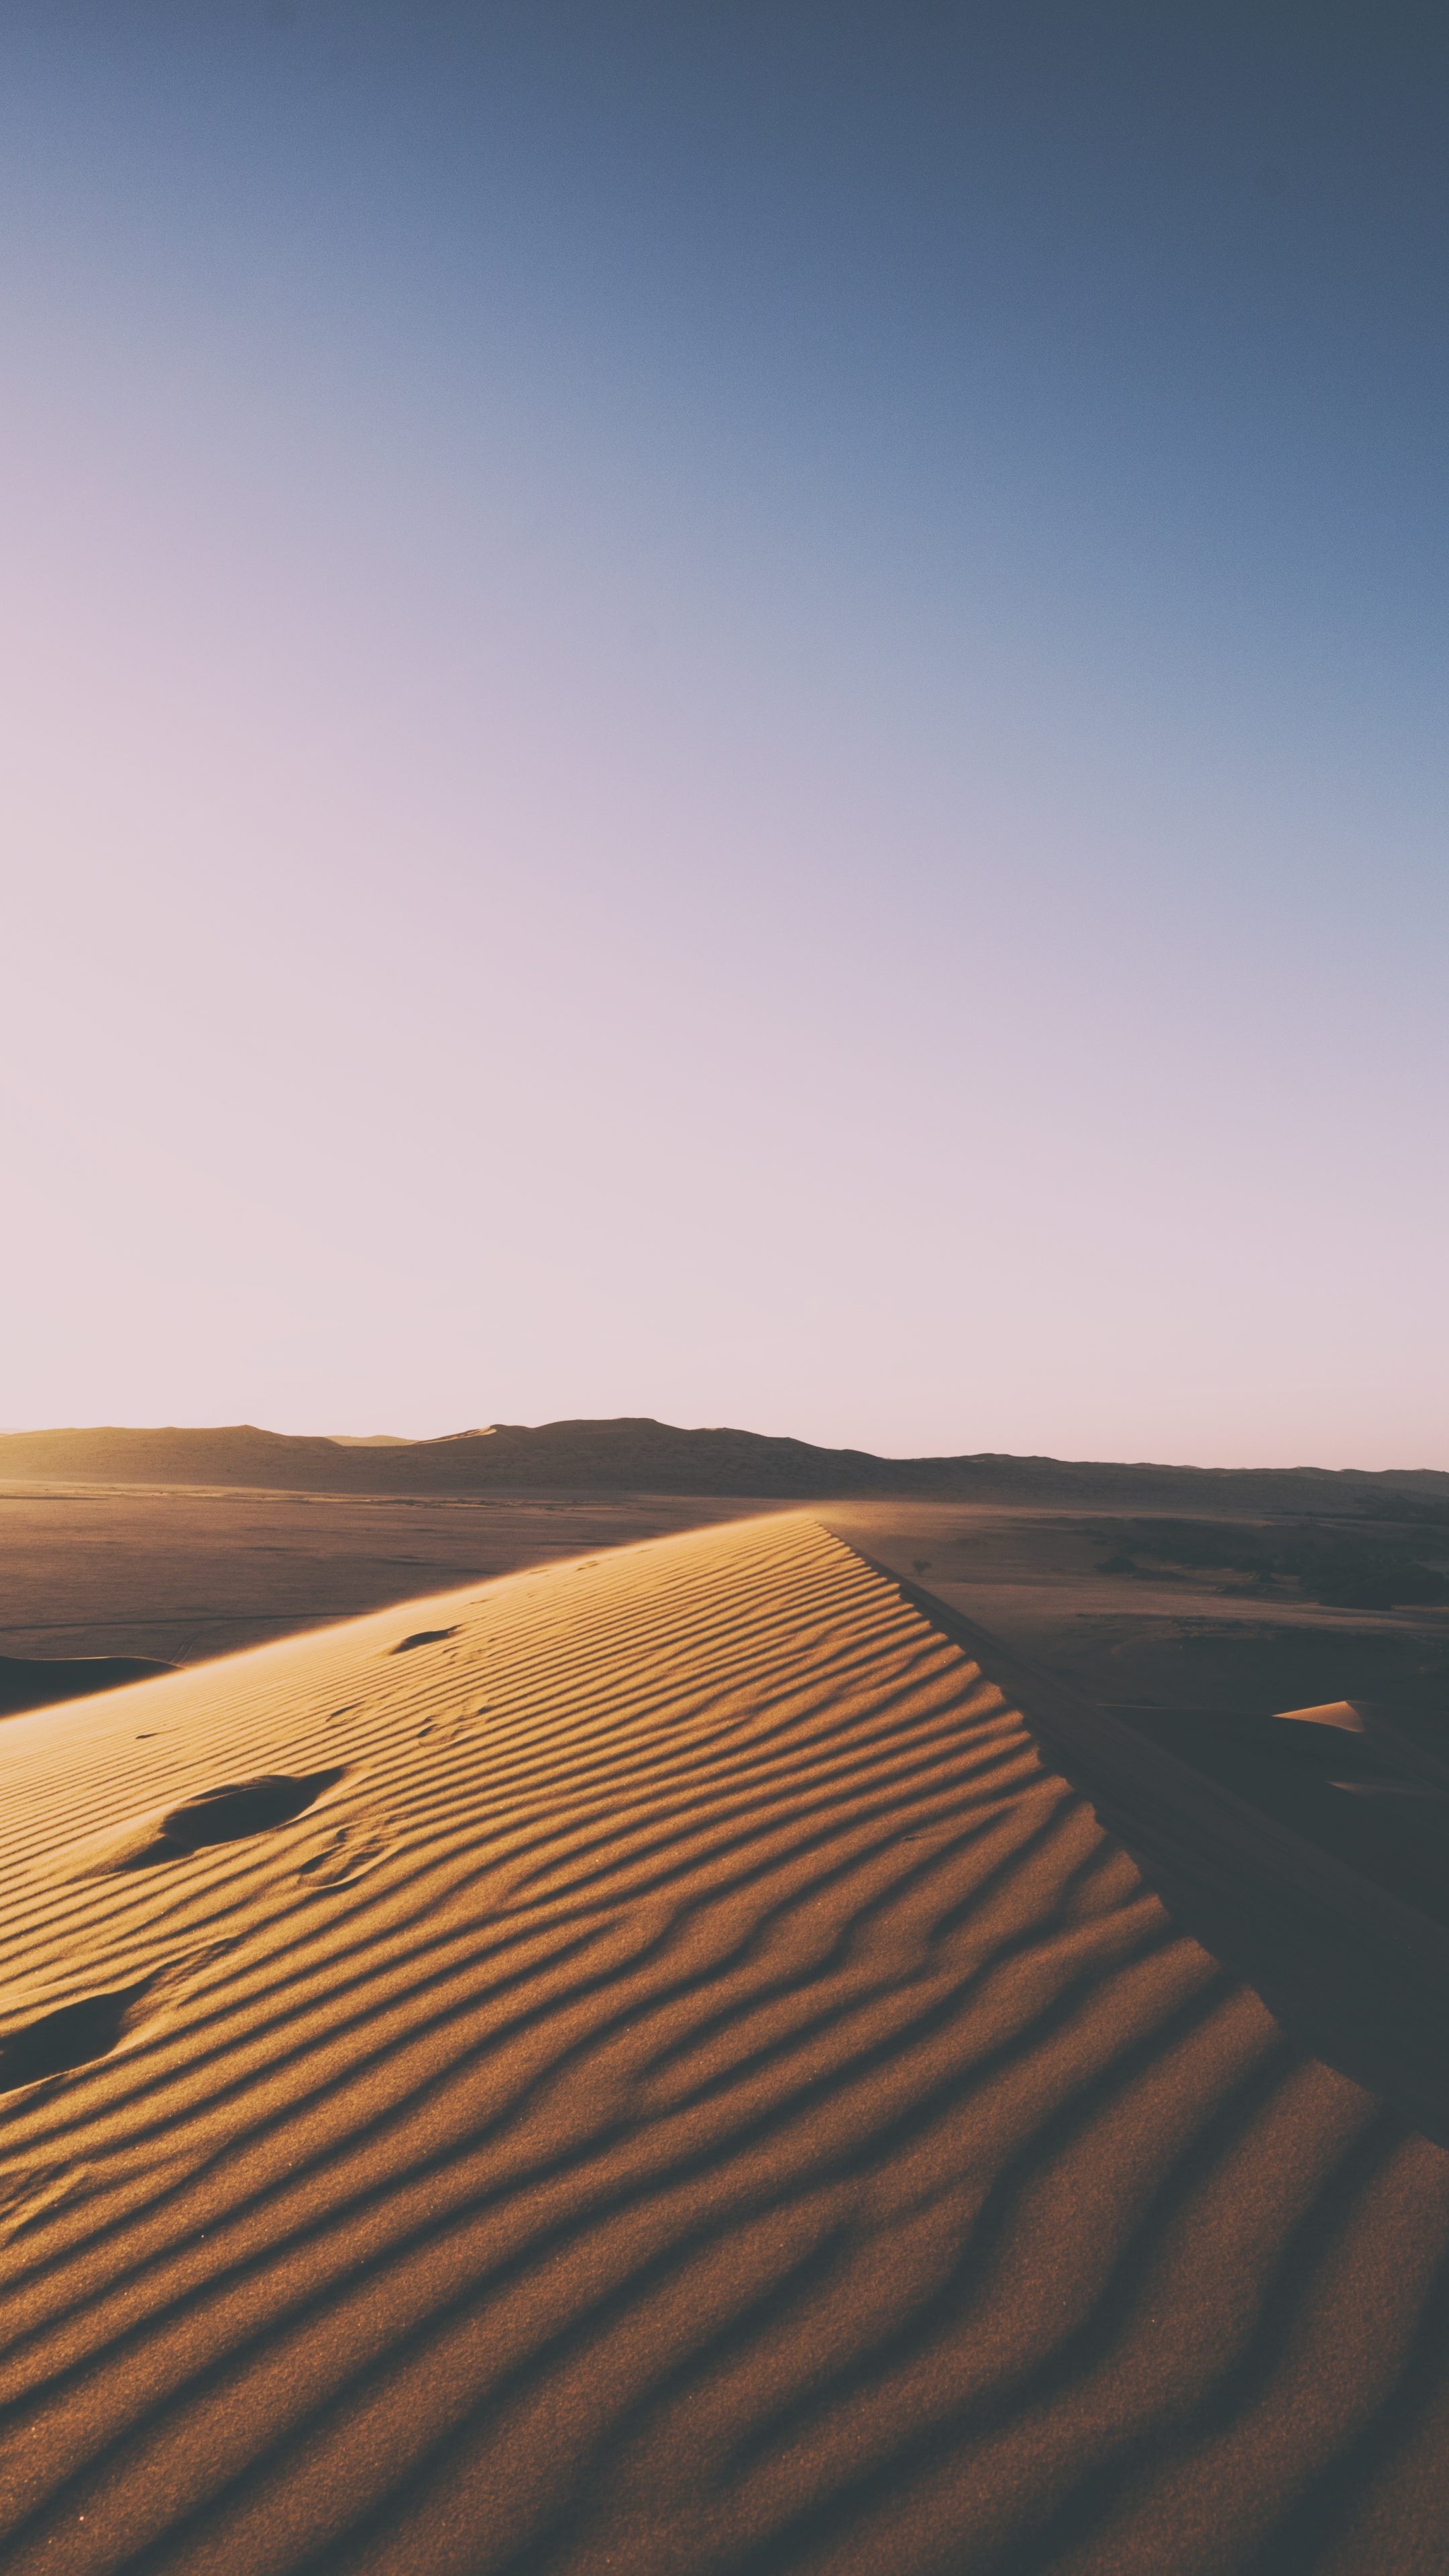 Gobi Desert, Sunset in the desert, 7K wallpaper, Mesmerizing beauty, 2160x3840 4K Handy